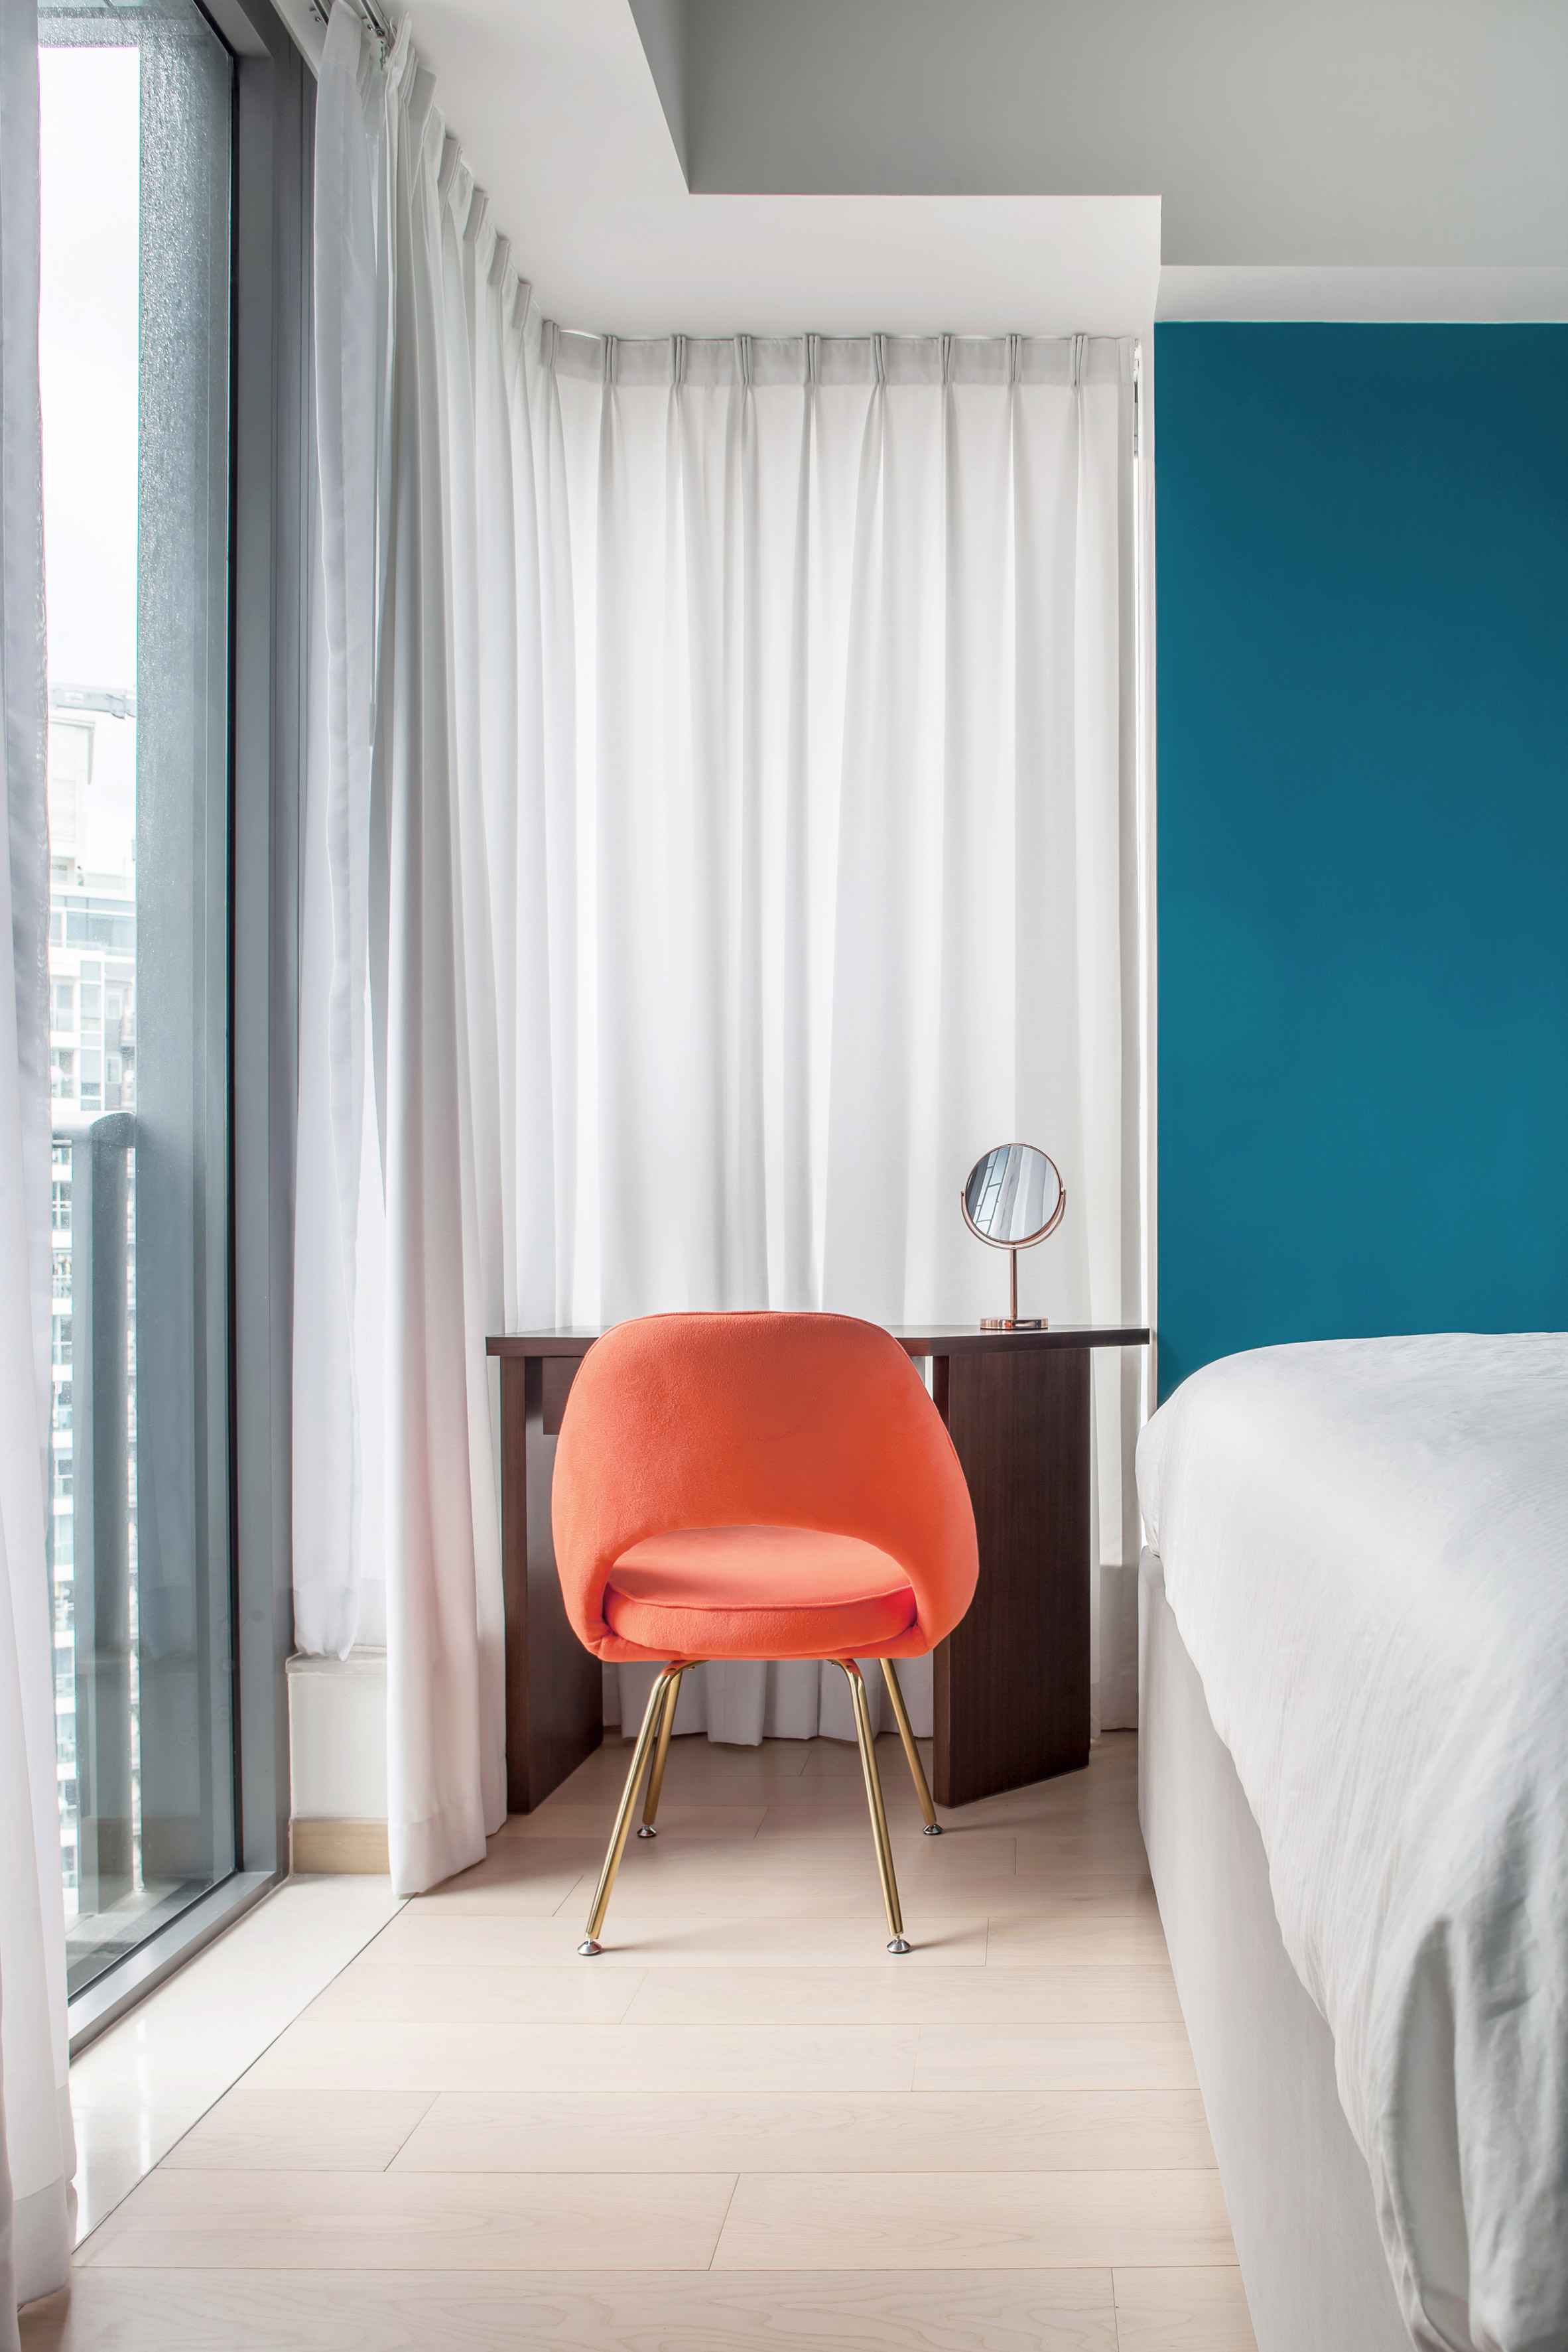 Thiết kế căn hộ với tường và đồ nội thất có màu rực rỡ dành riêng cho chủ nhân thiết kế thời trang - Ảnh 6.